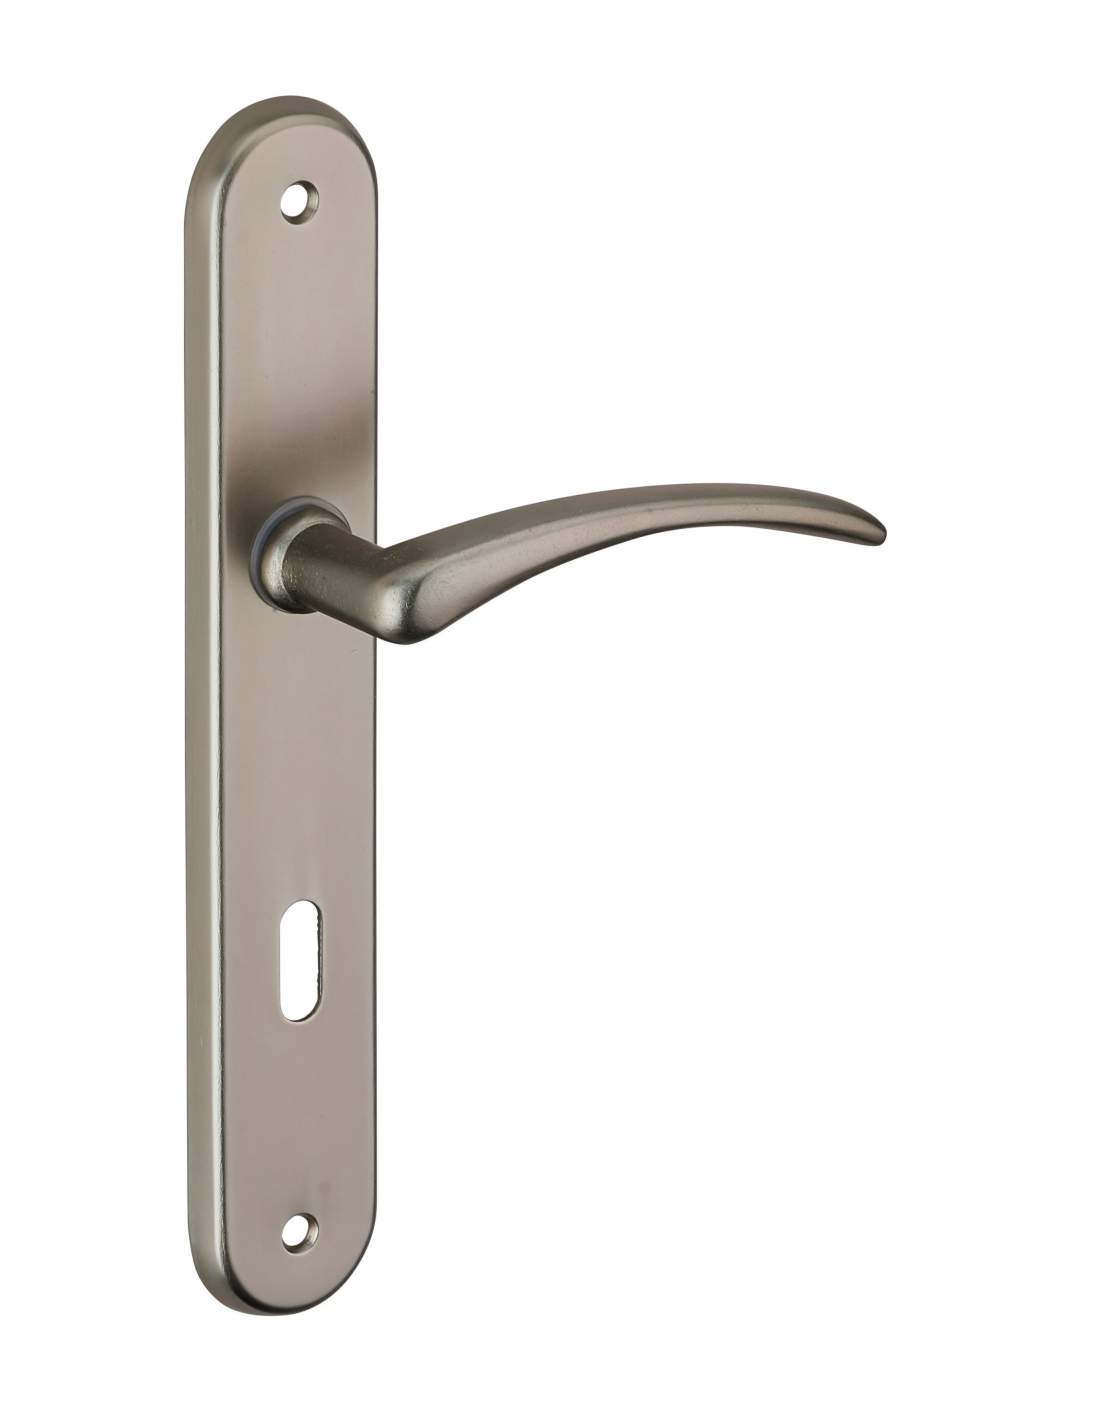 Manija de la puerta Selen, Al níquel satinado, E195, con agujero de llave.